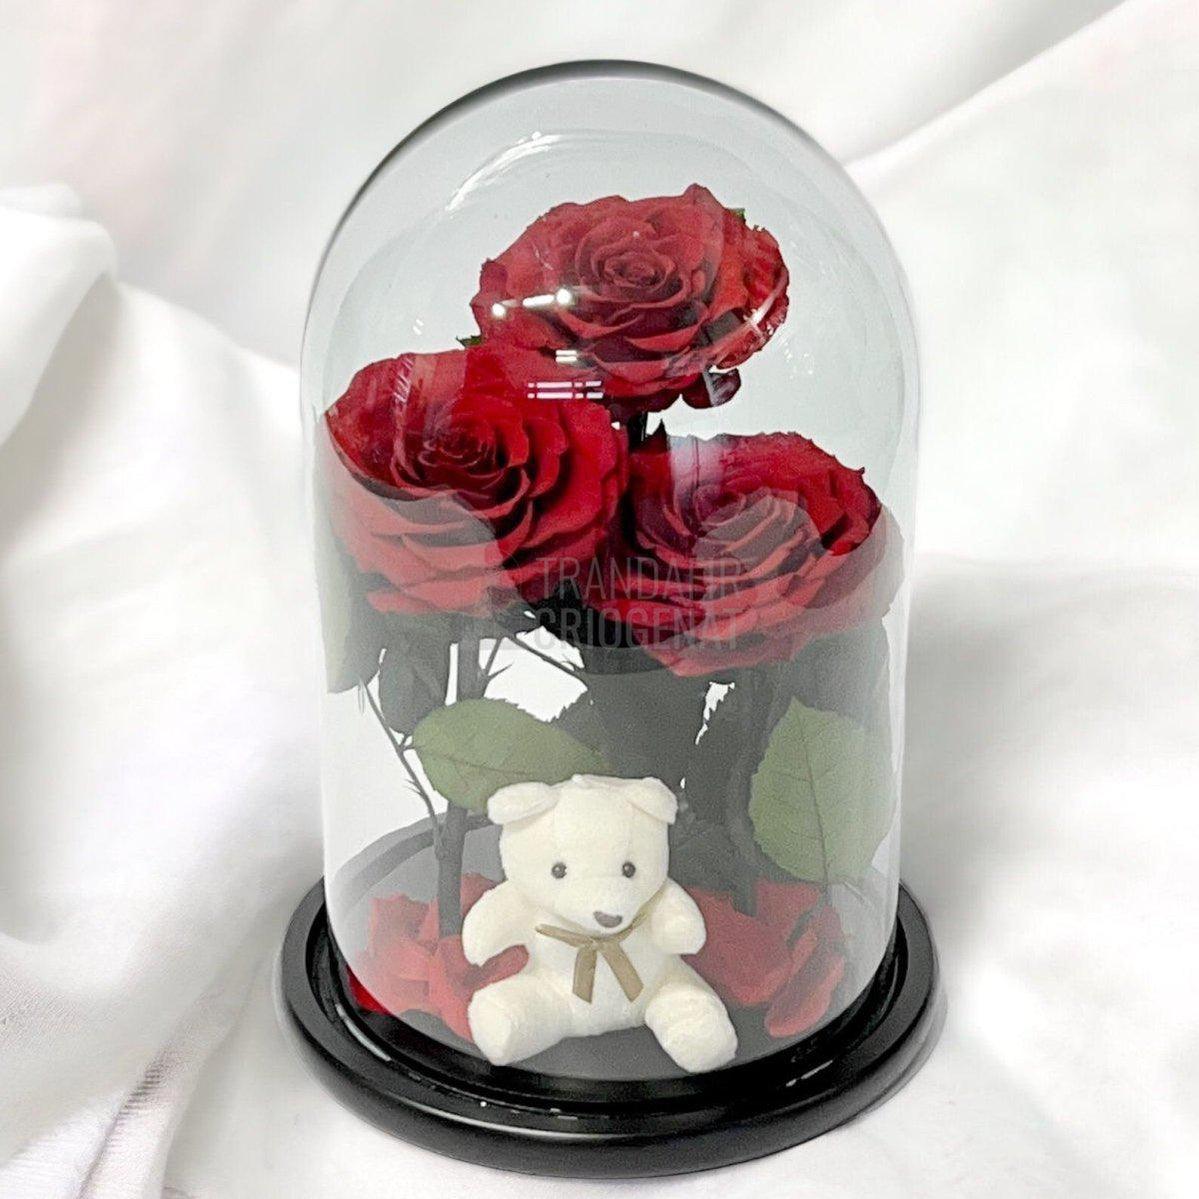 3 Trandafiri Criogenati mari rosii in cupola sticla, cu ursulet - Trandafir-Criogenat.ro